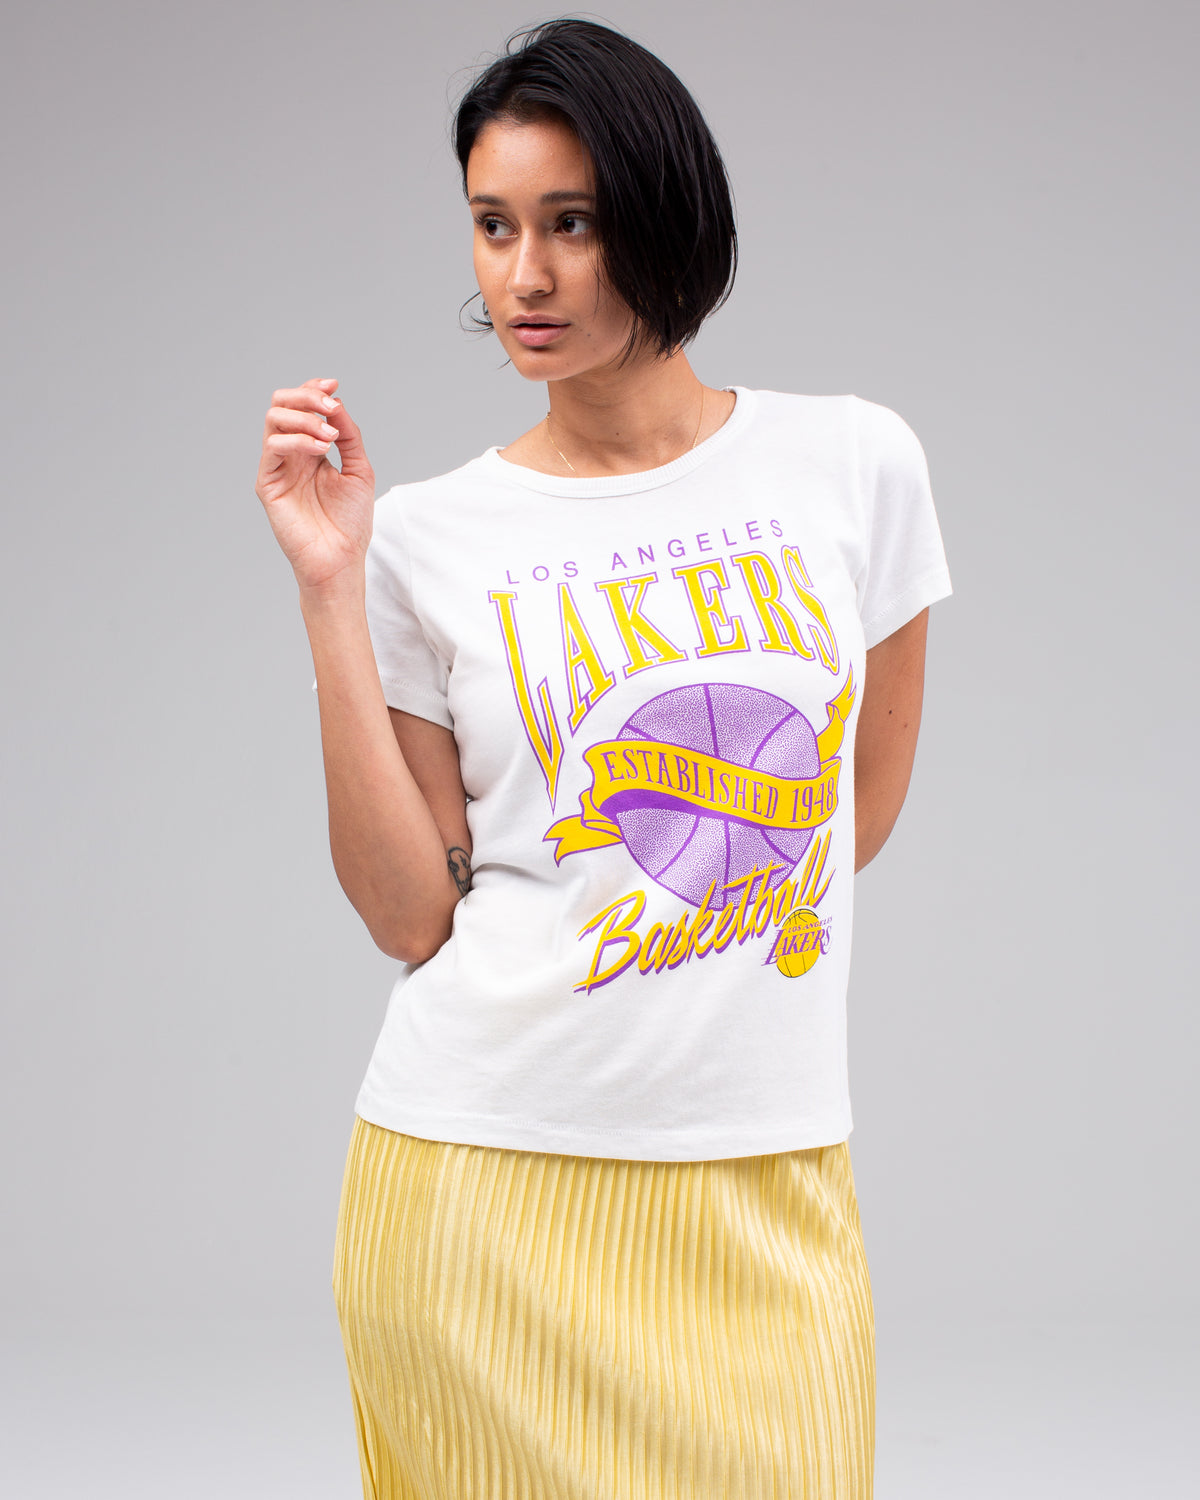 LA Lakers Tie Dye Long Sleeve Tee, Junk Food Clothing